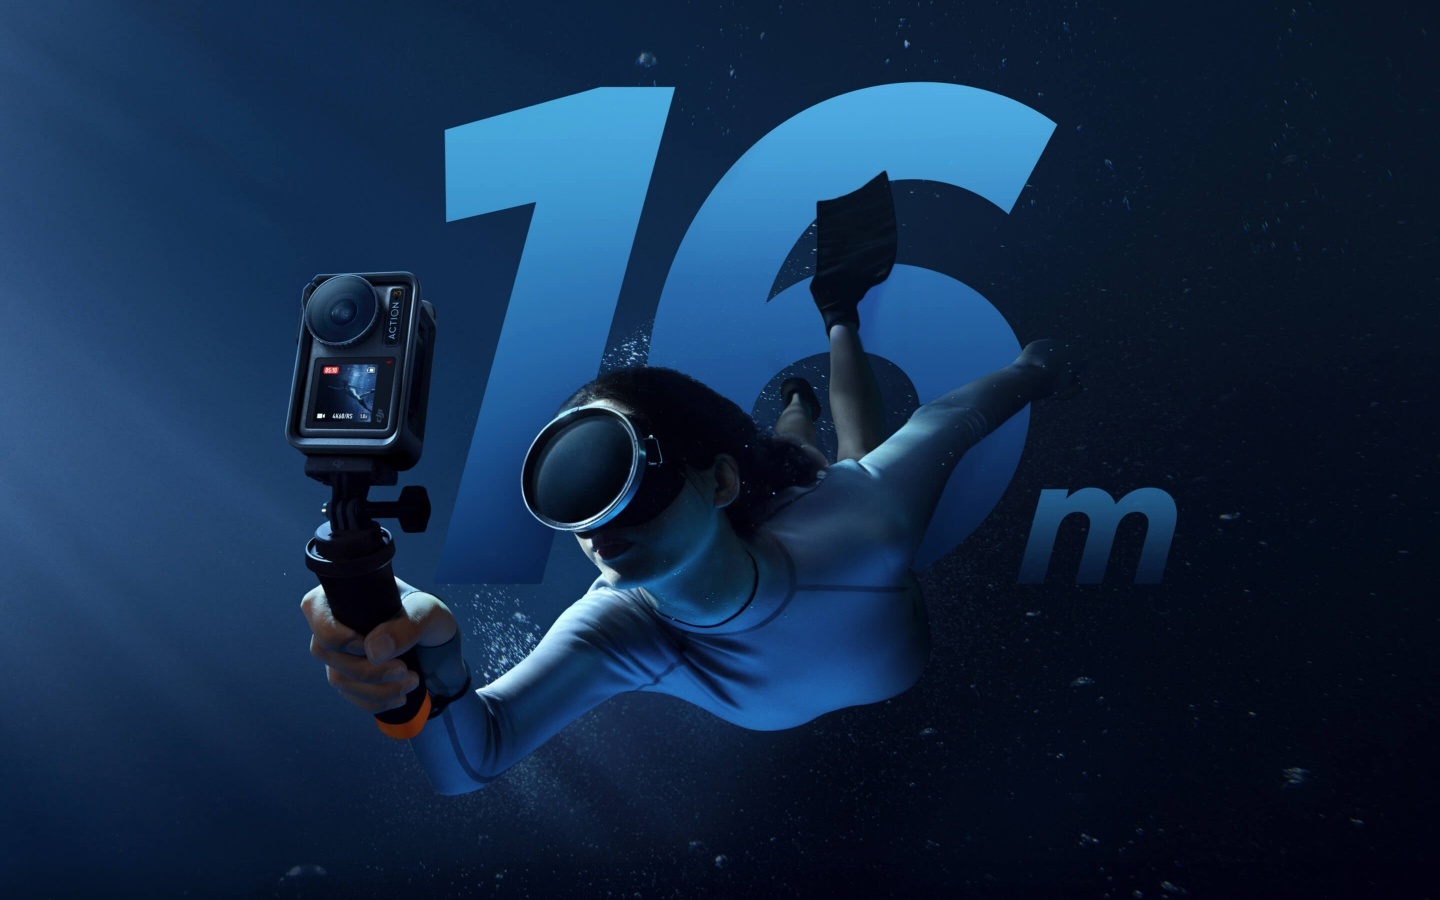 DJI 發表新一代運動相機 Osmo Action 3！雪地、深海都能承受，橫拍直拍都順手